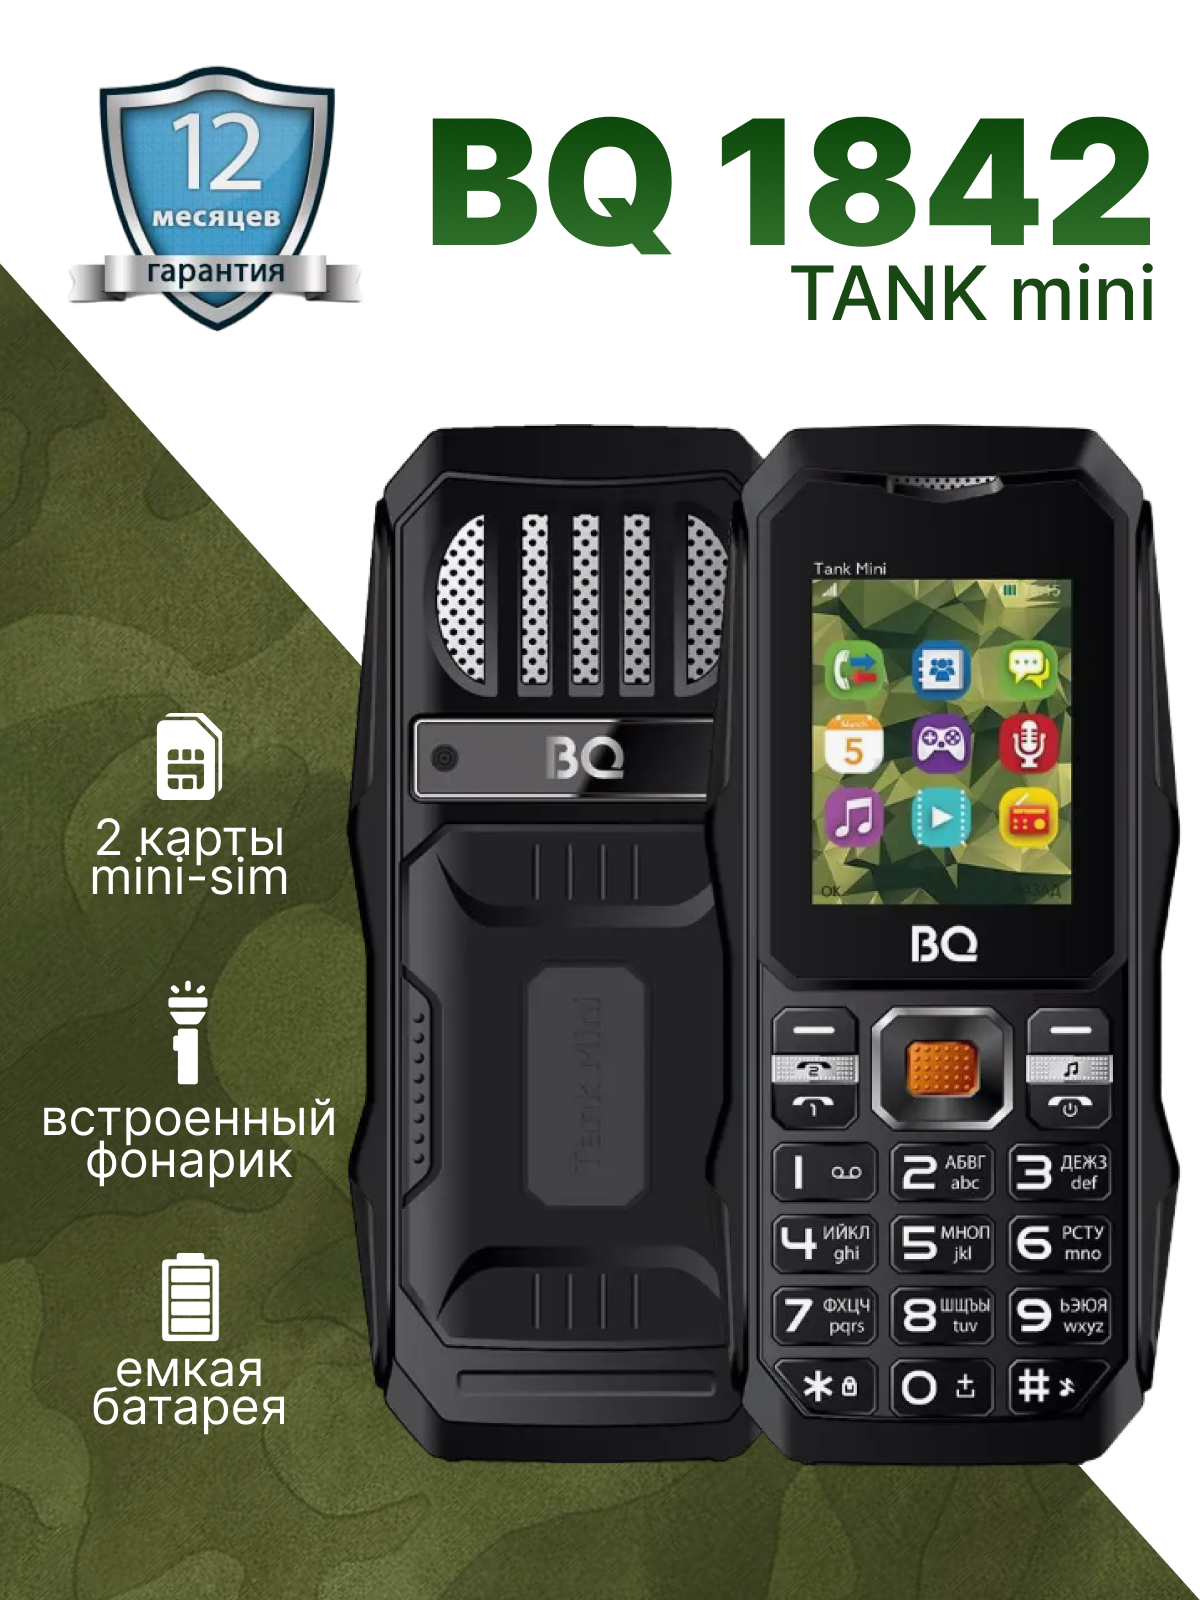 Сотовый телефон BQ Tank mini 1842, темно-зеленый - фото №10